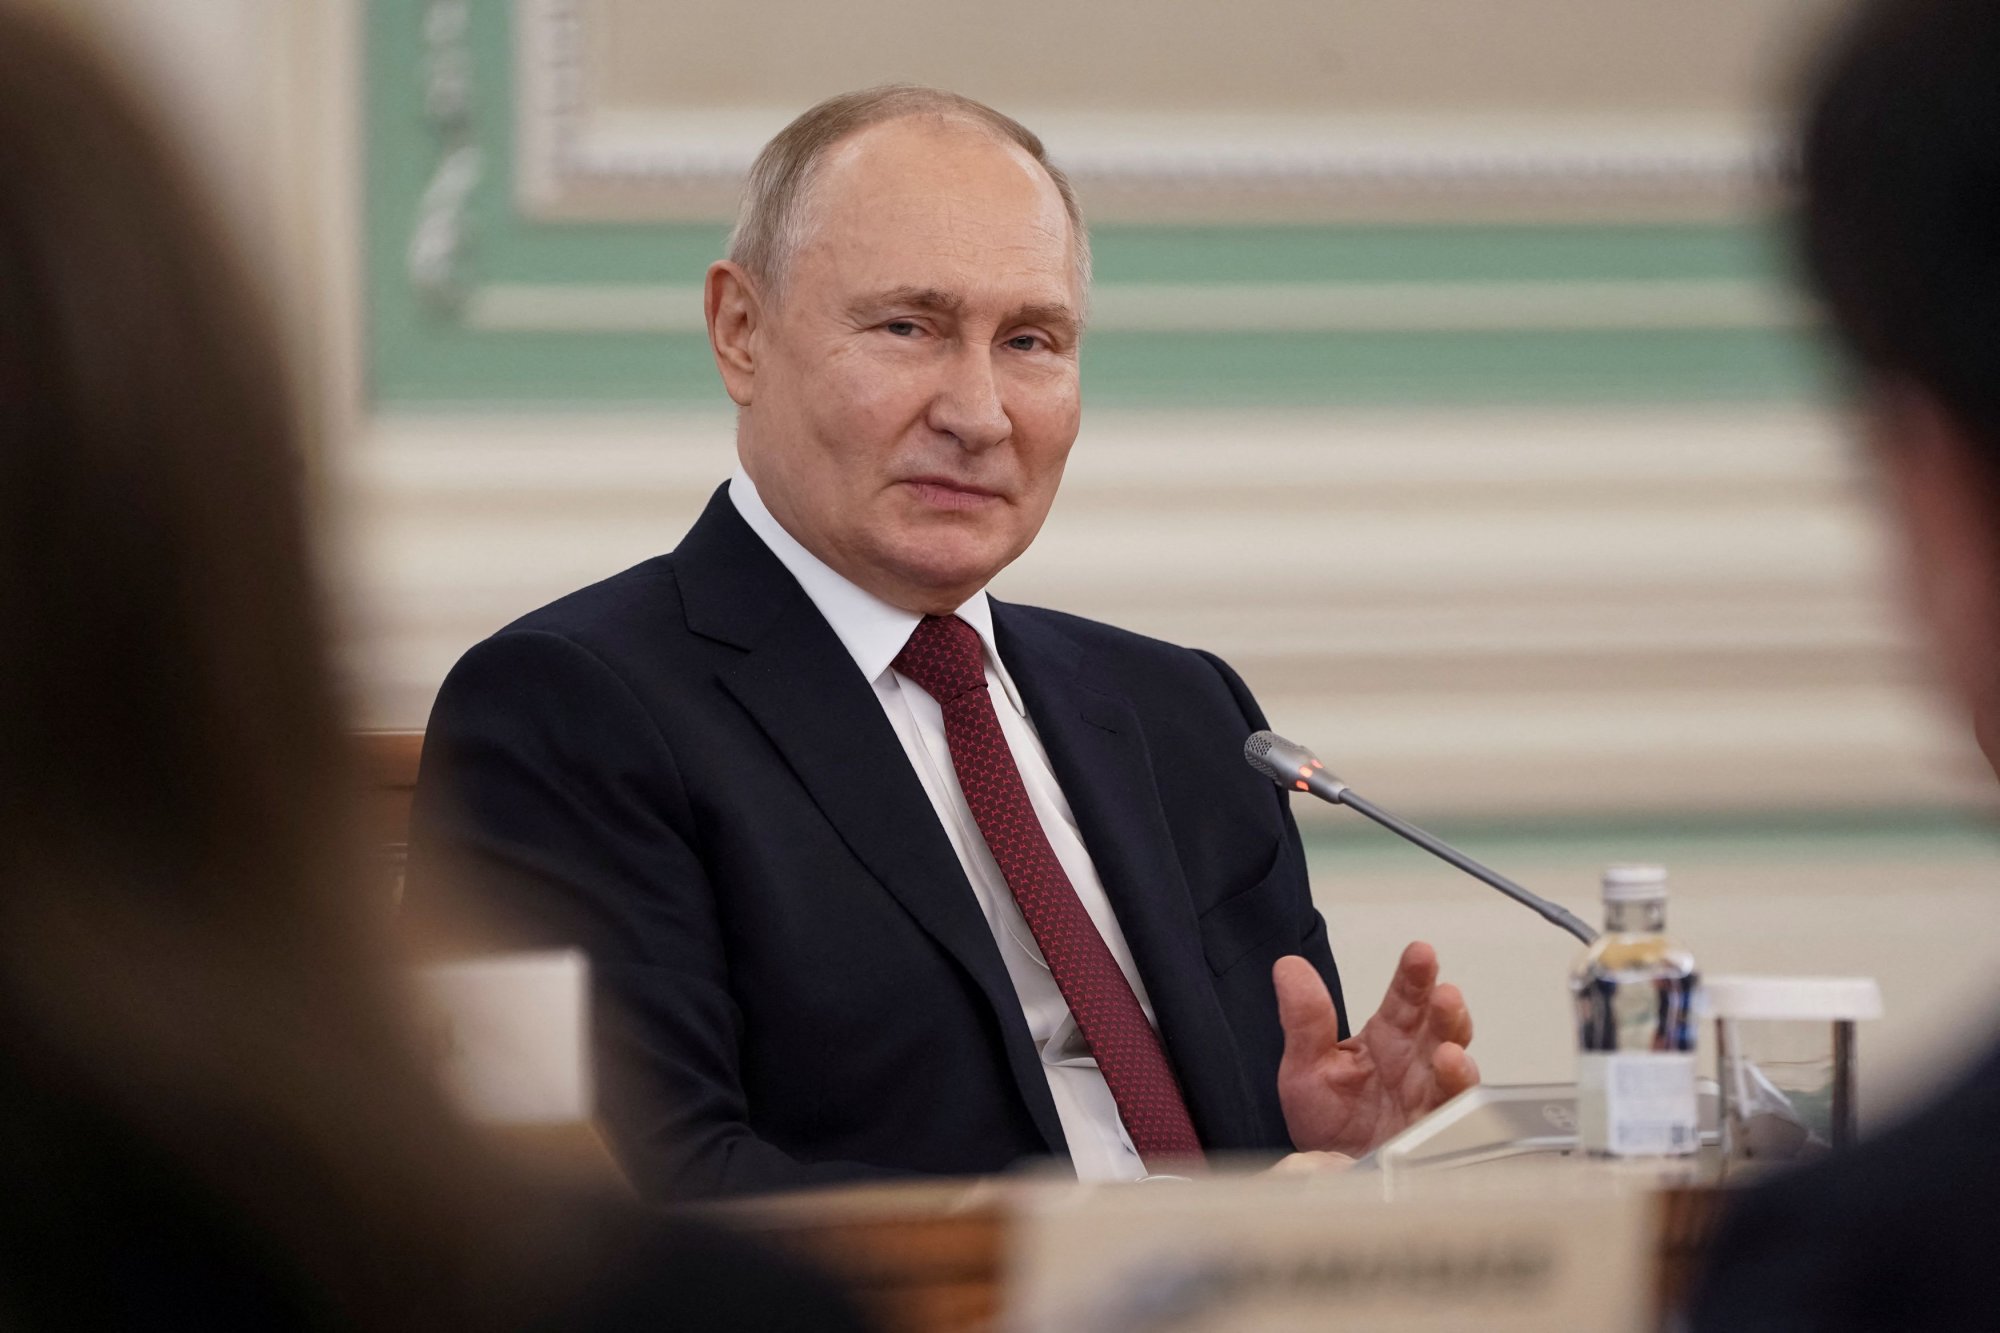 Β.Πούτιν: «Οι περιφέρειες της Ουκρανίας που εντάχθηκαν στην Ρωσική Ομοσπονδία μέχρι το 2030 πρέπει να έχουν φτάσει το βιοτικό επίπεδο της υπόλοιπης Ρωσίας»